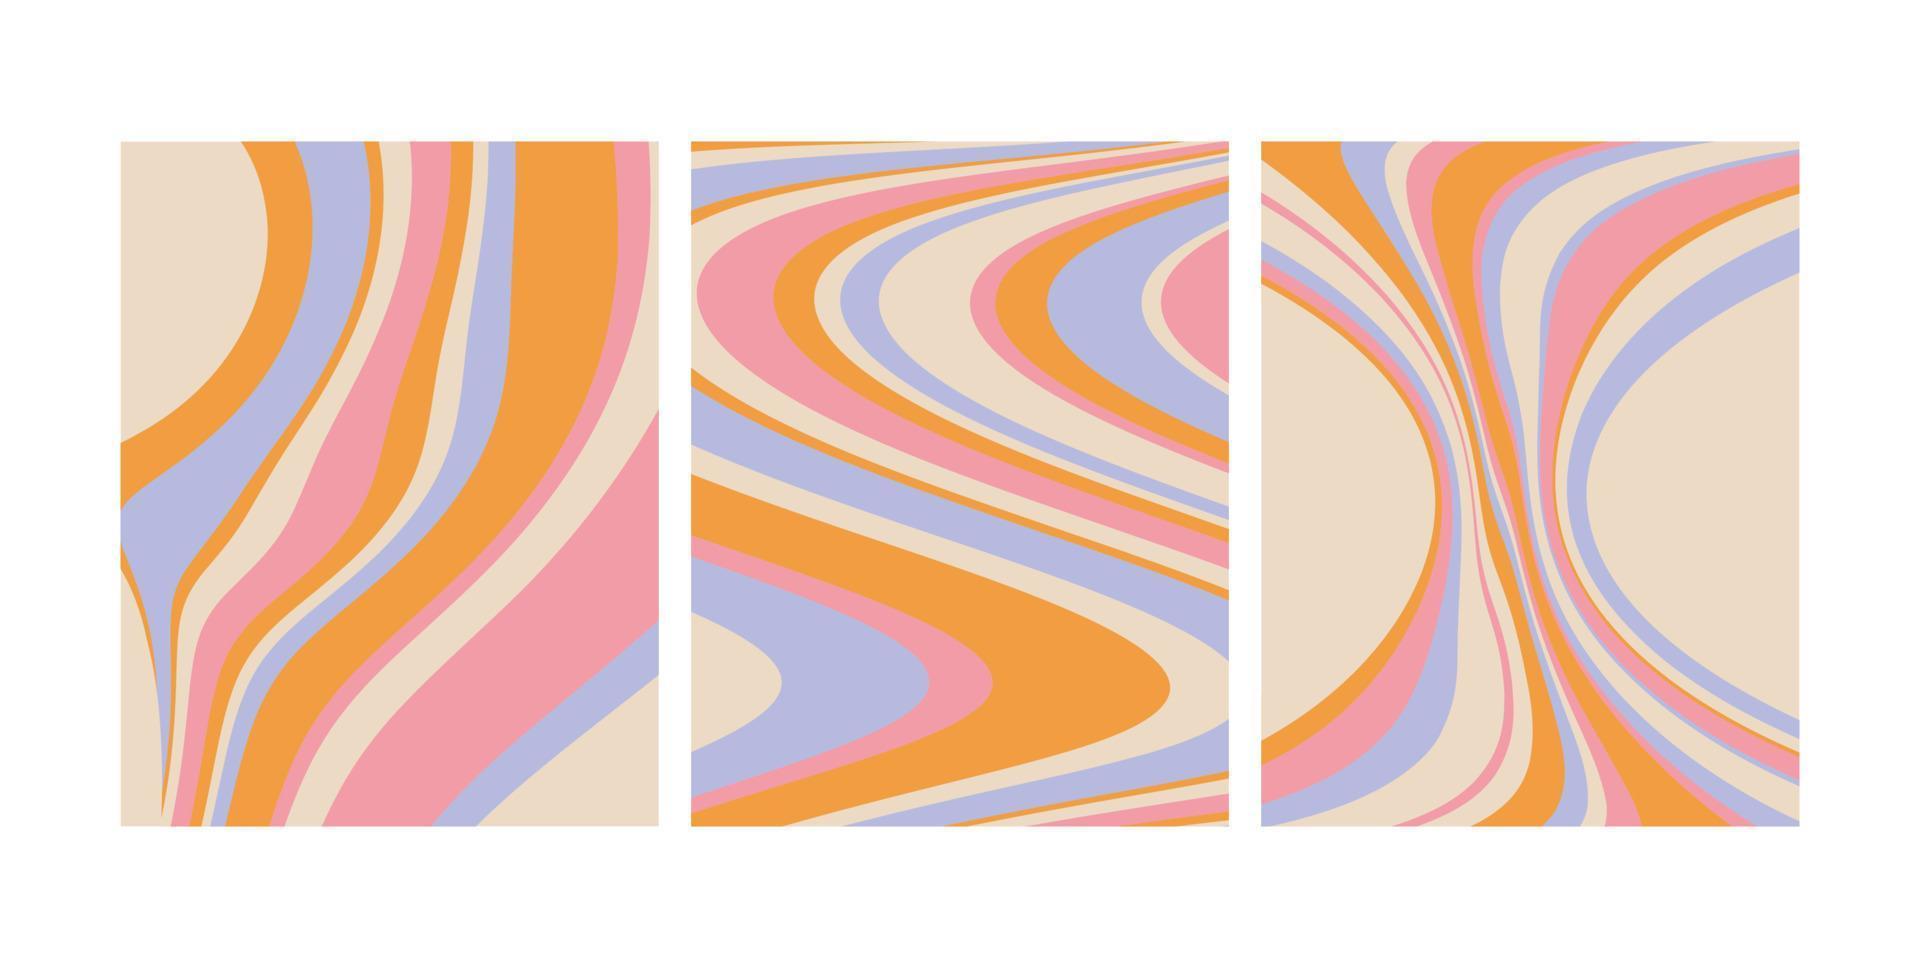 los fondos de onda maravillosos establecen una línea pastel. diseño abstracto retro de onda moderna. ilustración vectorial vector